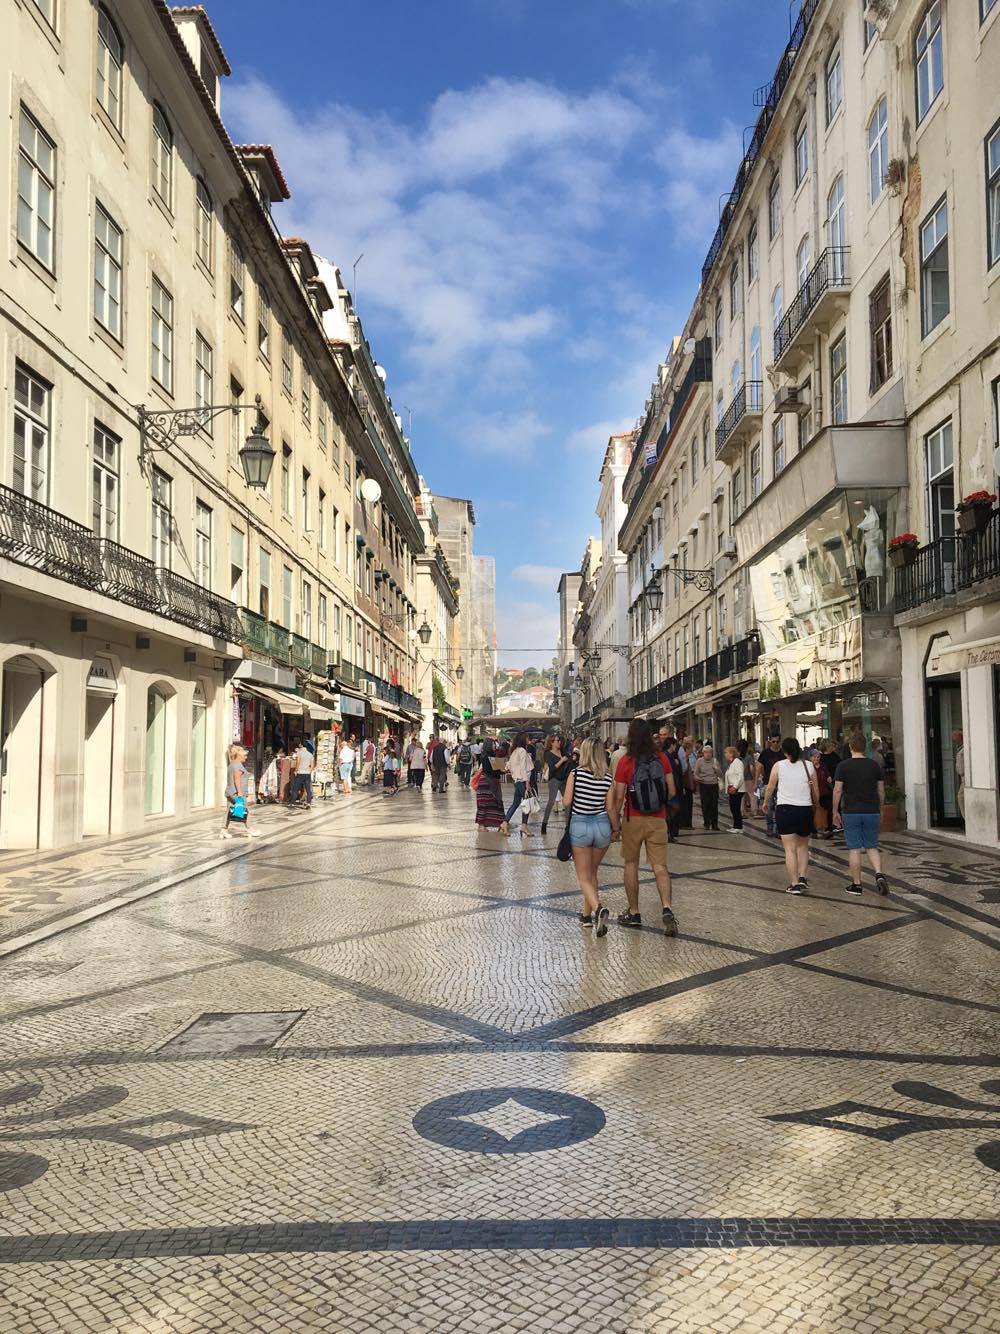 Rua Augusta in Lisbon, Portugal